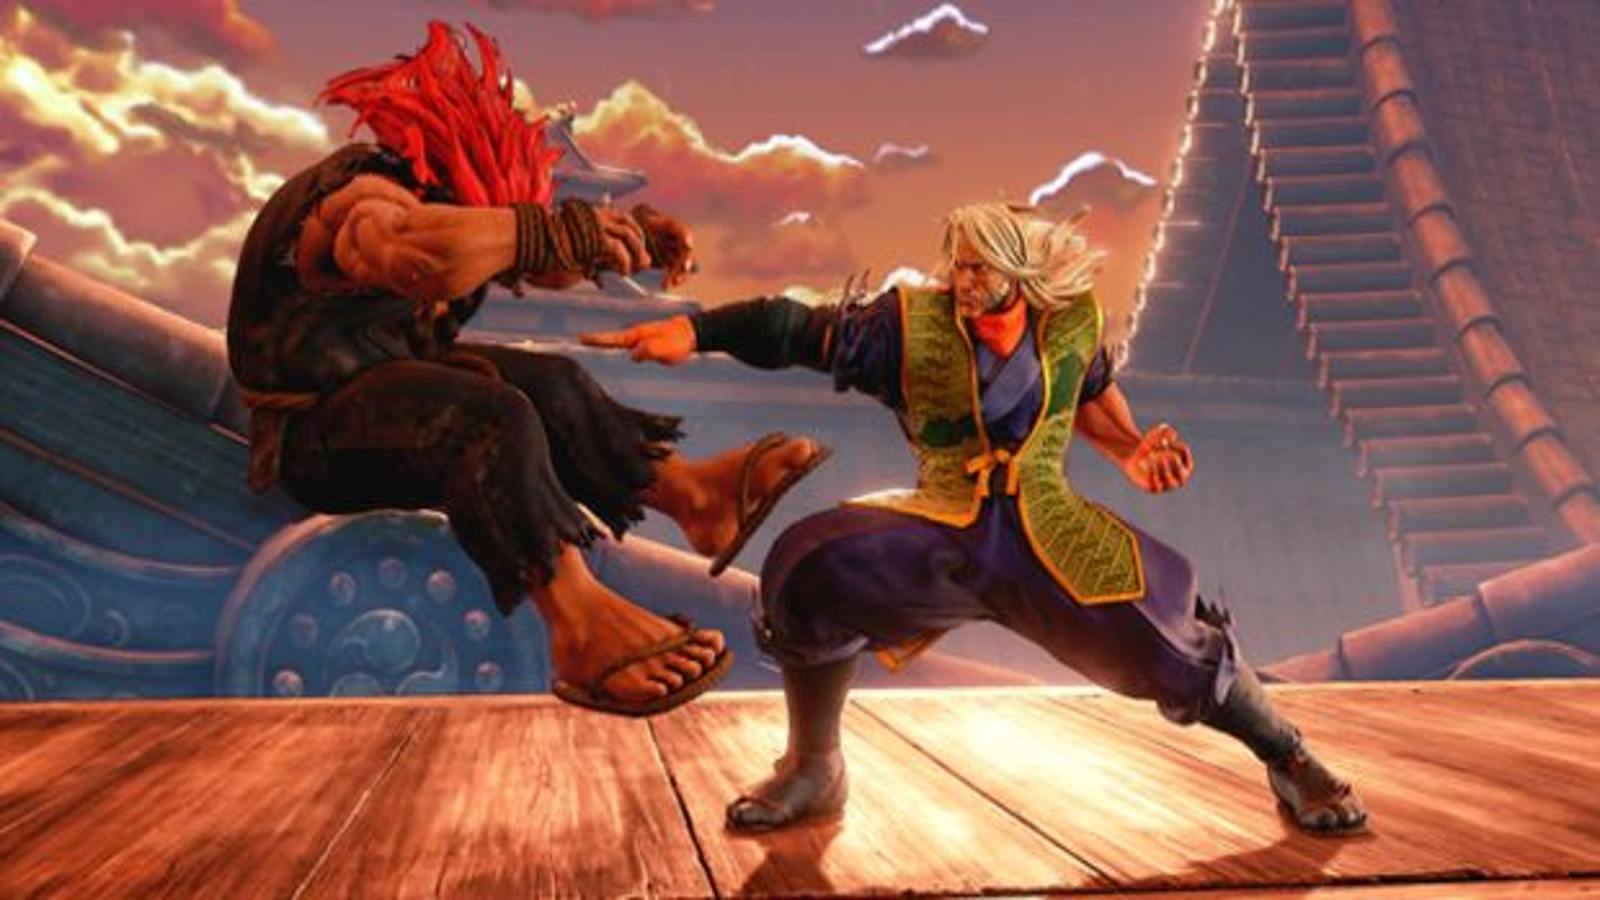 Akuma Detailed In Latest Street Fighter V Video - Game Informer